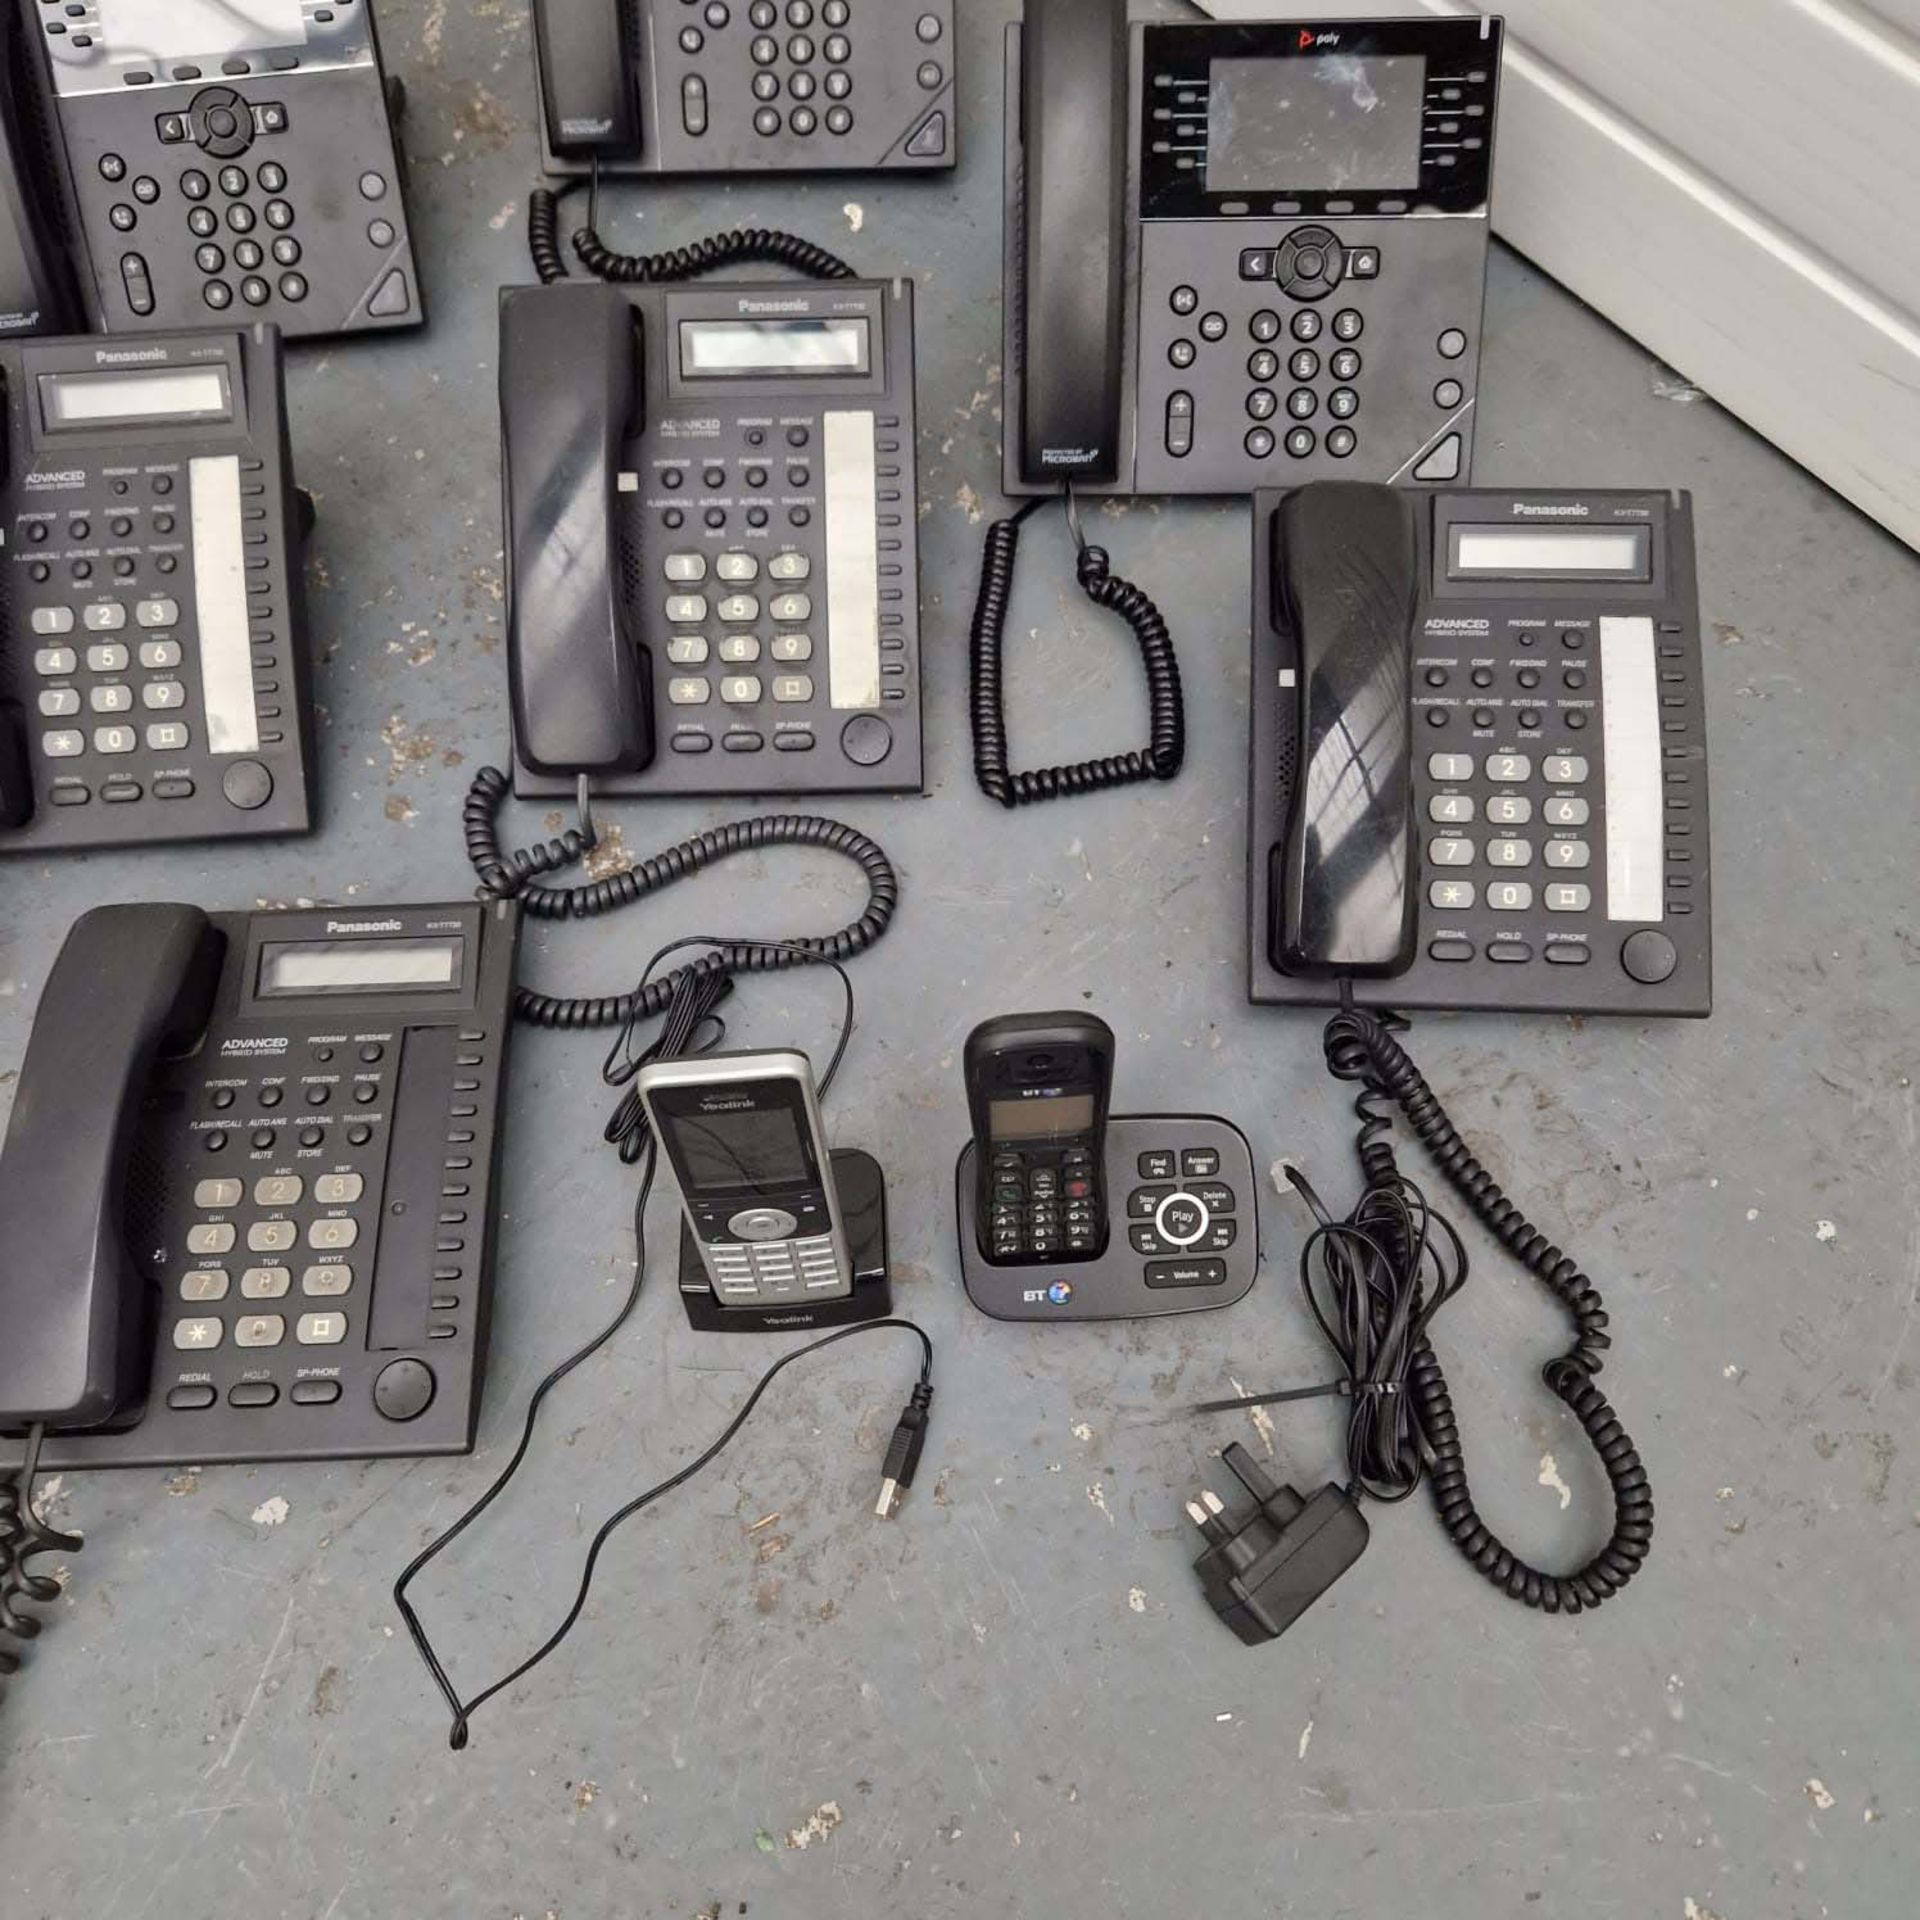 10 x Desktop Telephones. - Image 2 of 4